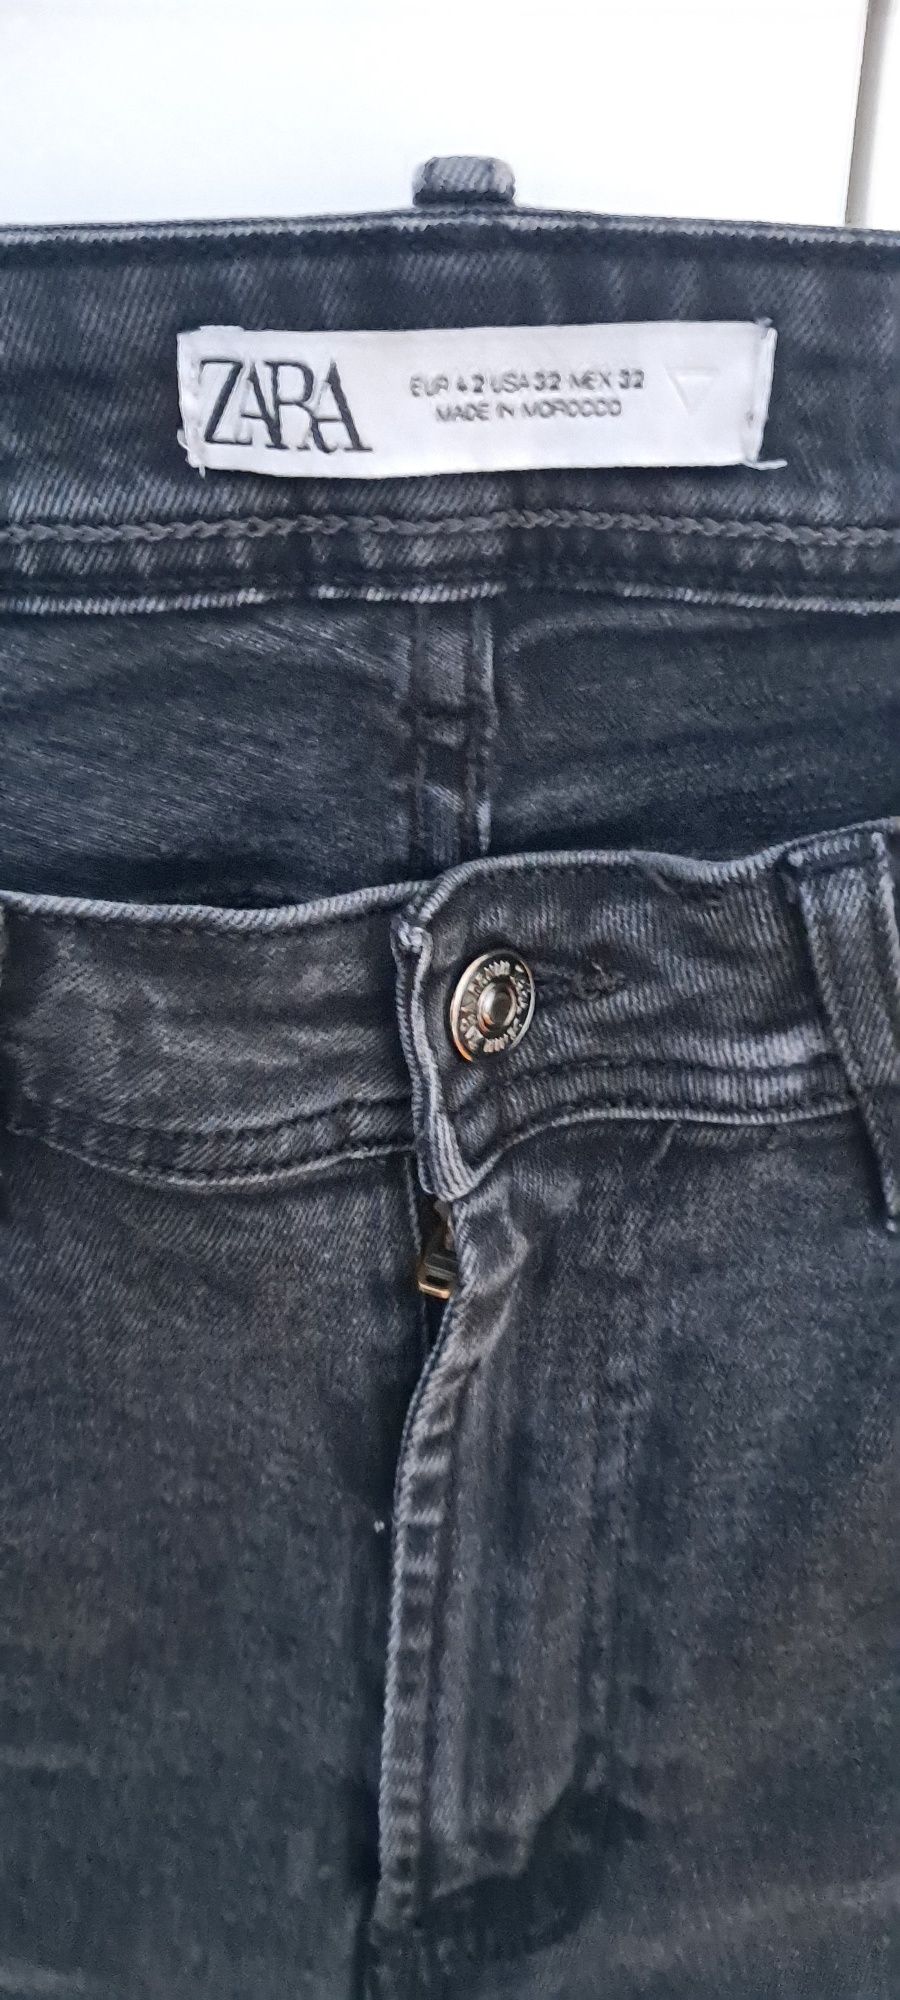 Czarne cieniowane spodnie jeansowe skinny zara